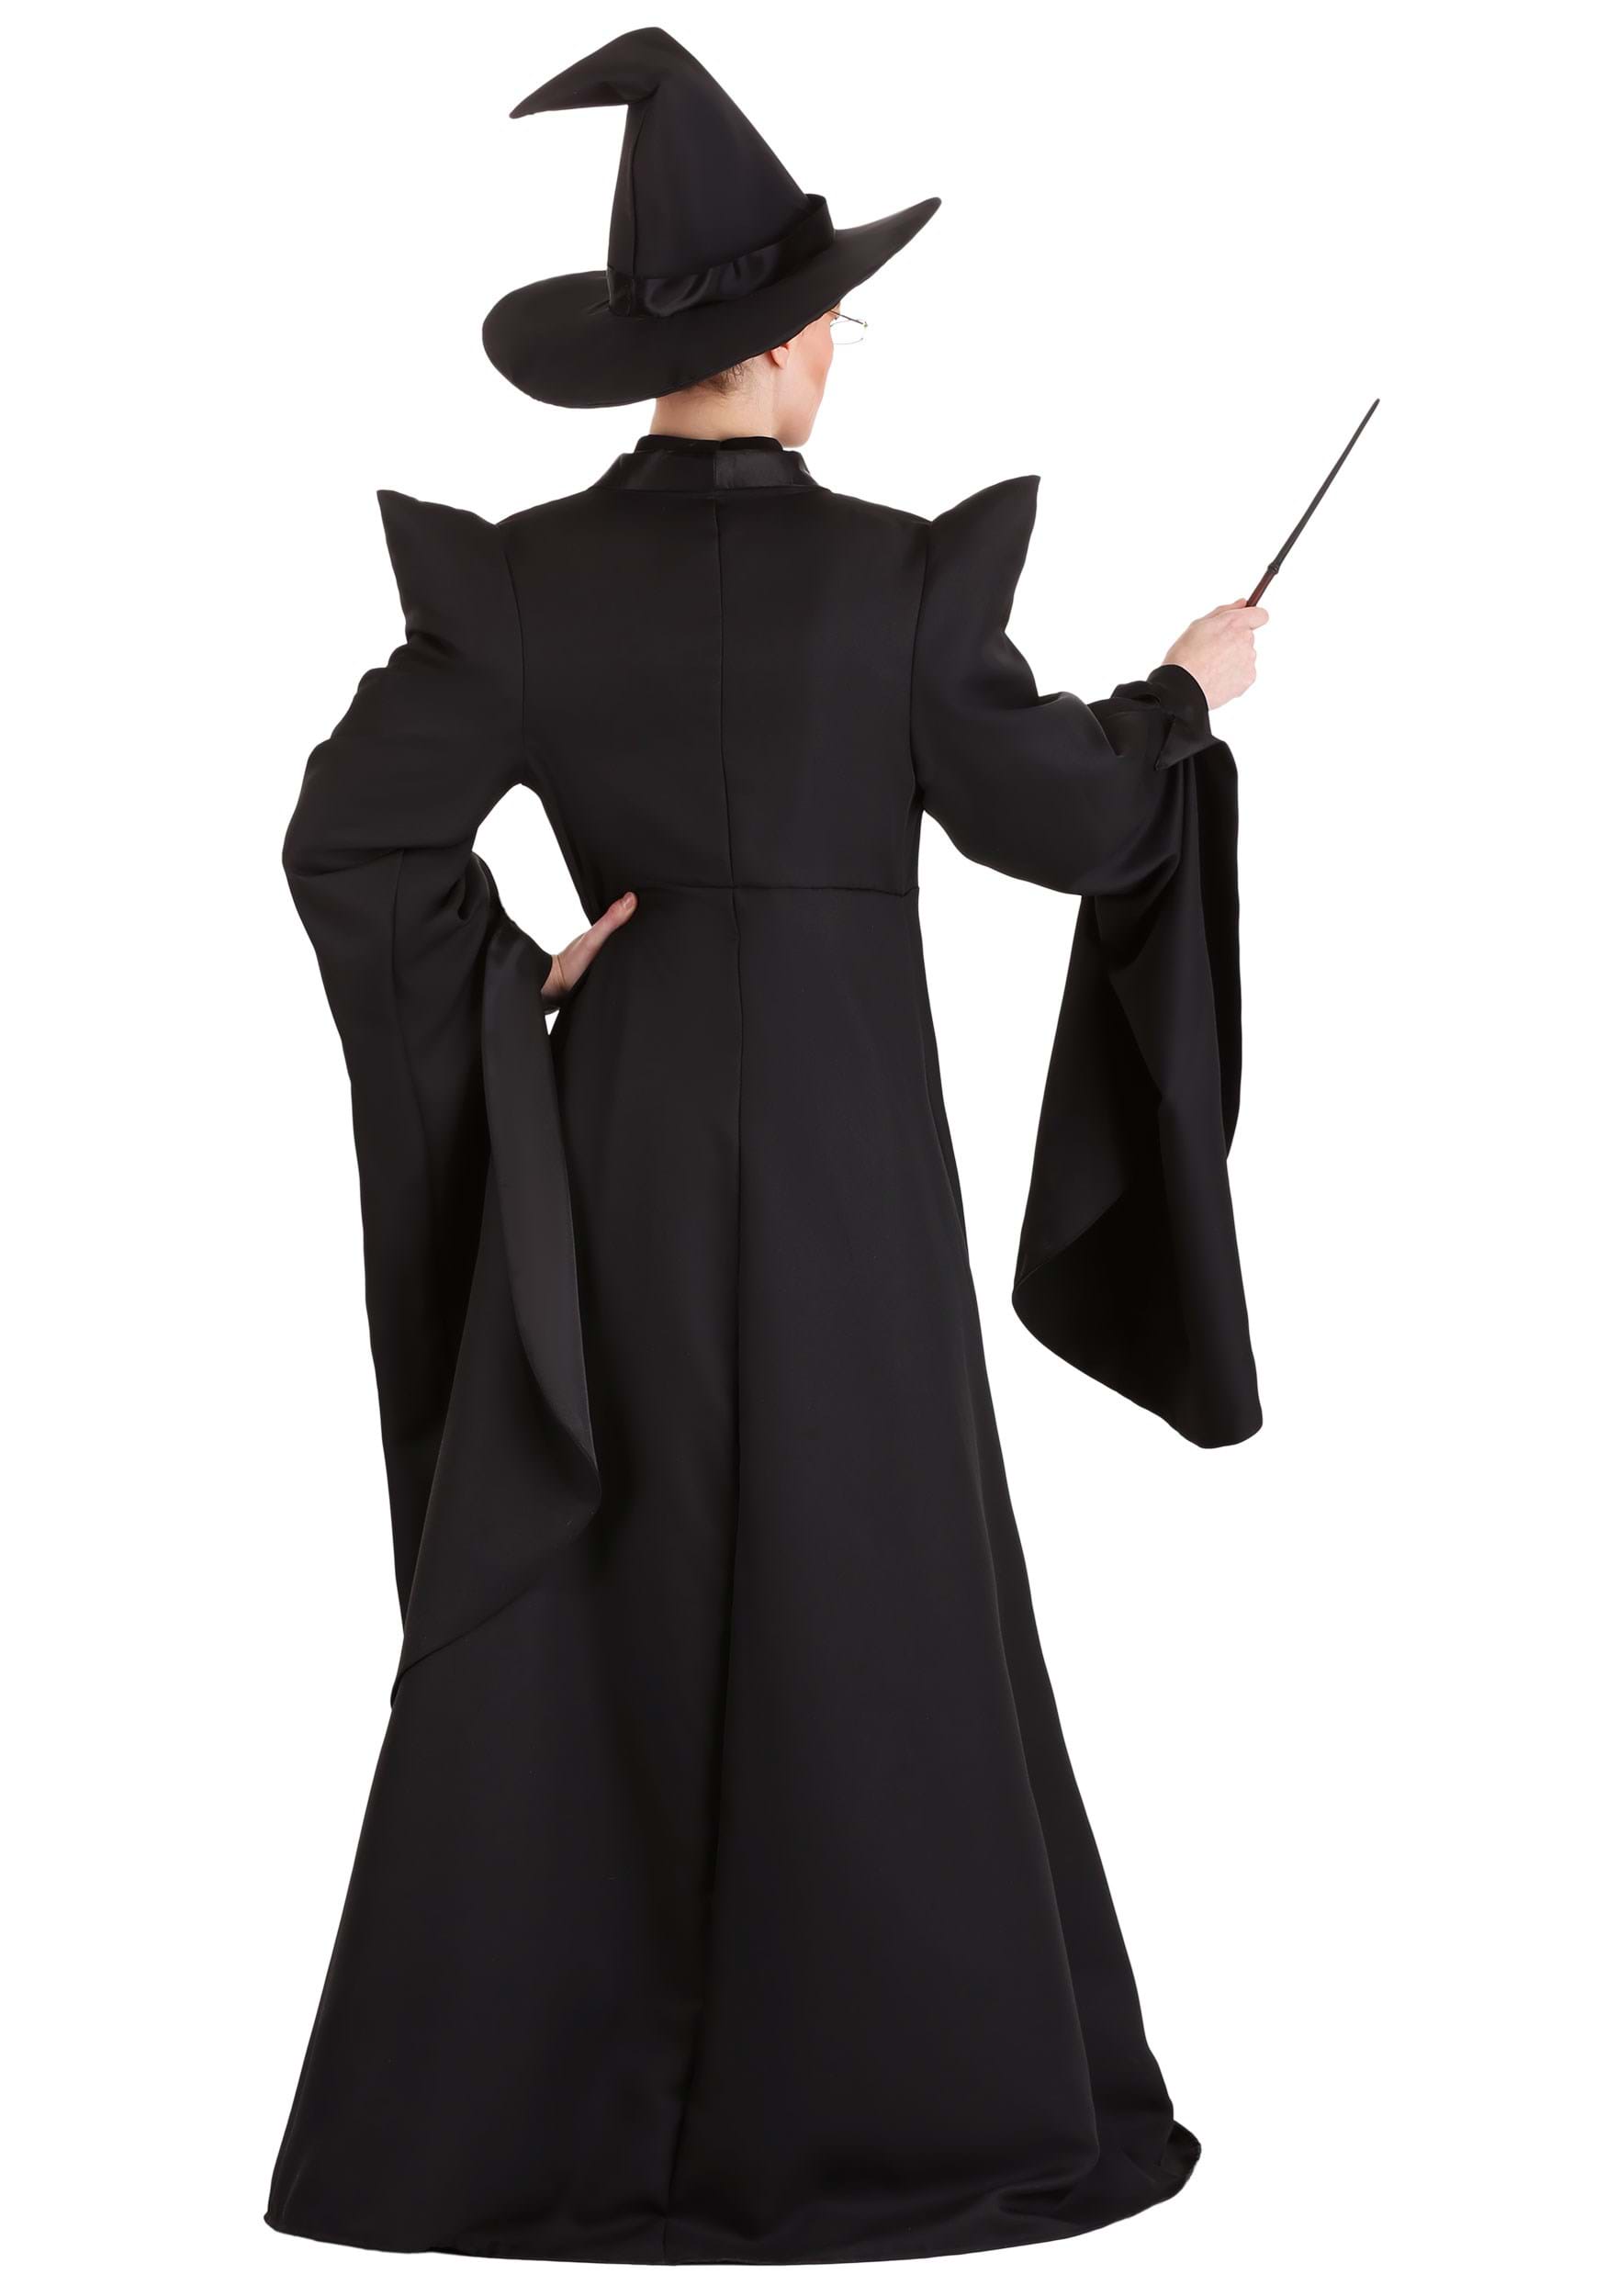 Deluxe Harry Potter McGonagall Women's Costume